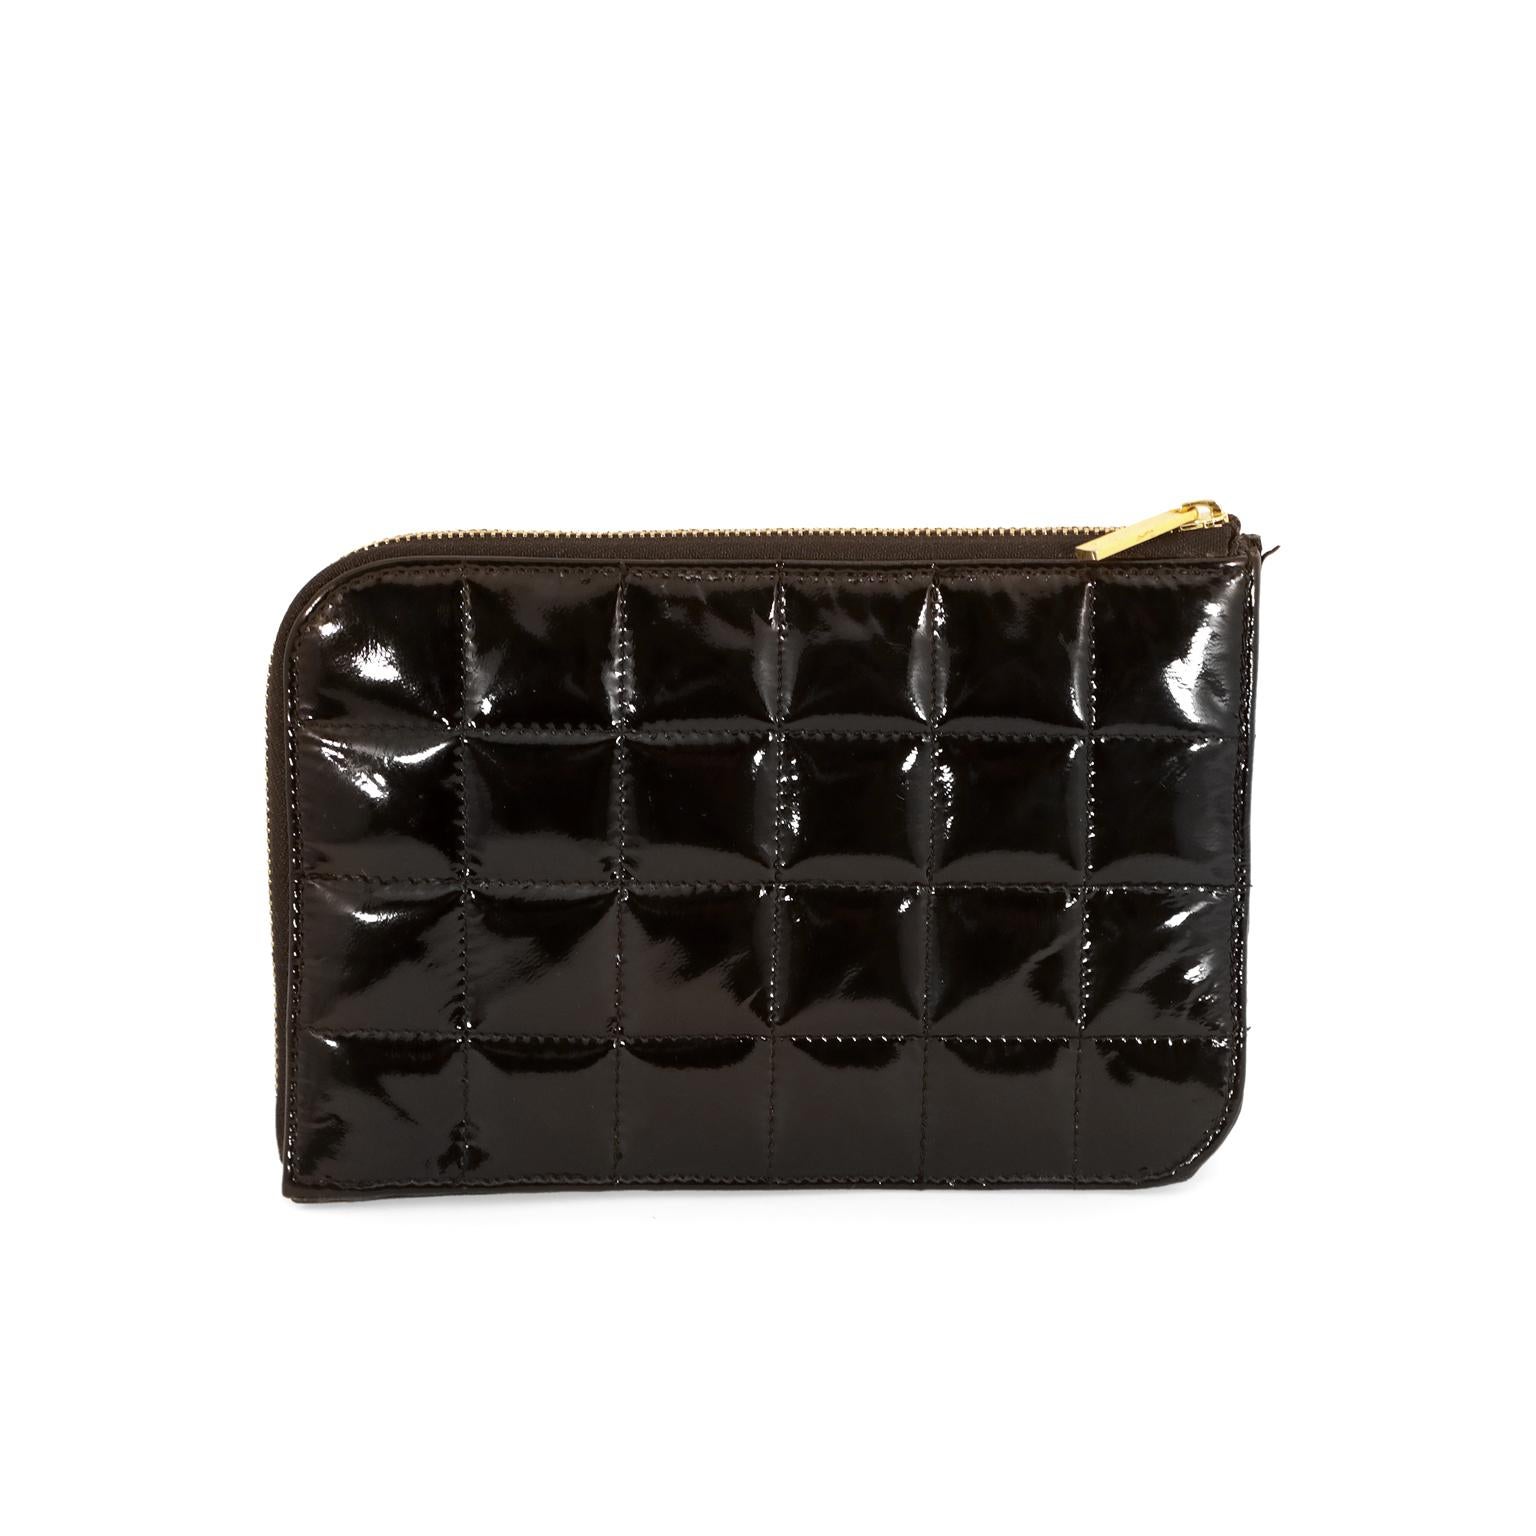 Diese authentische Chanel Black Patent Leder Zipper Wallet ist in sehr gutem Zustand.  Strapazierfähiges und wetterfestes schwarzes Lackleder ist mit einem quadratischen Schokoladenmuster abgesteppt.  Goldfarbene Reißverschlussöffnung oben und an